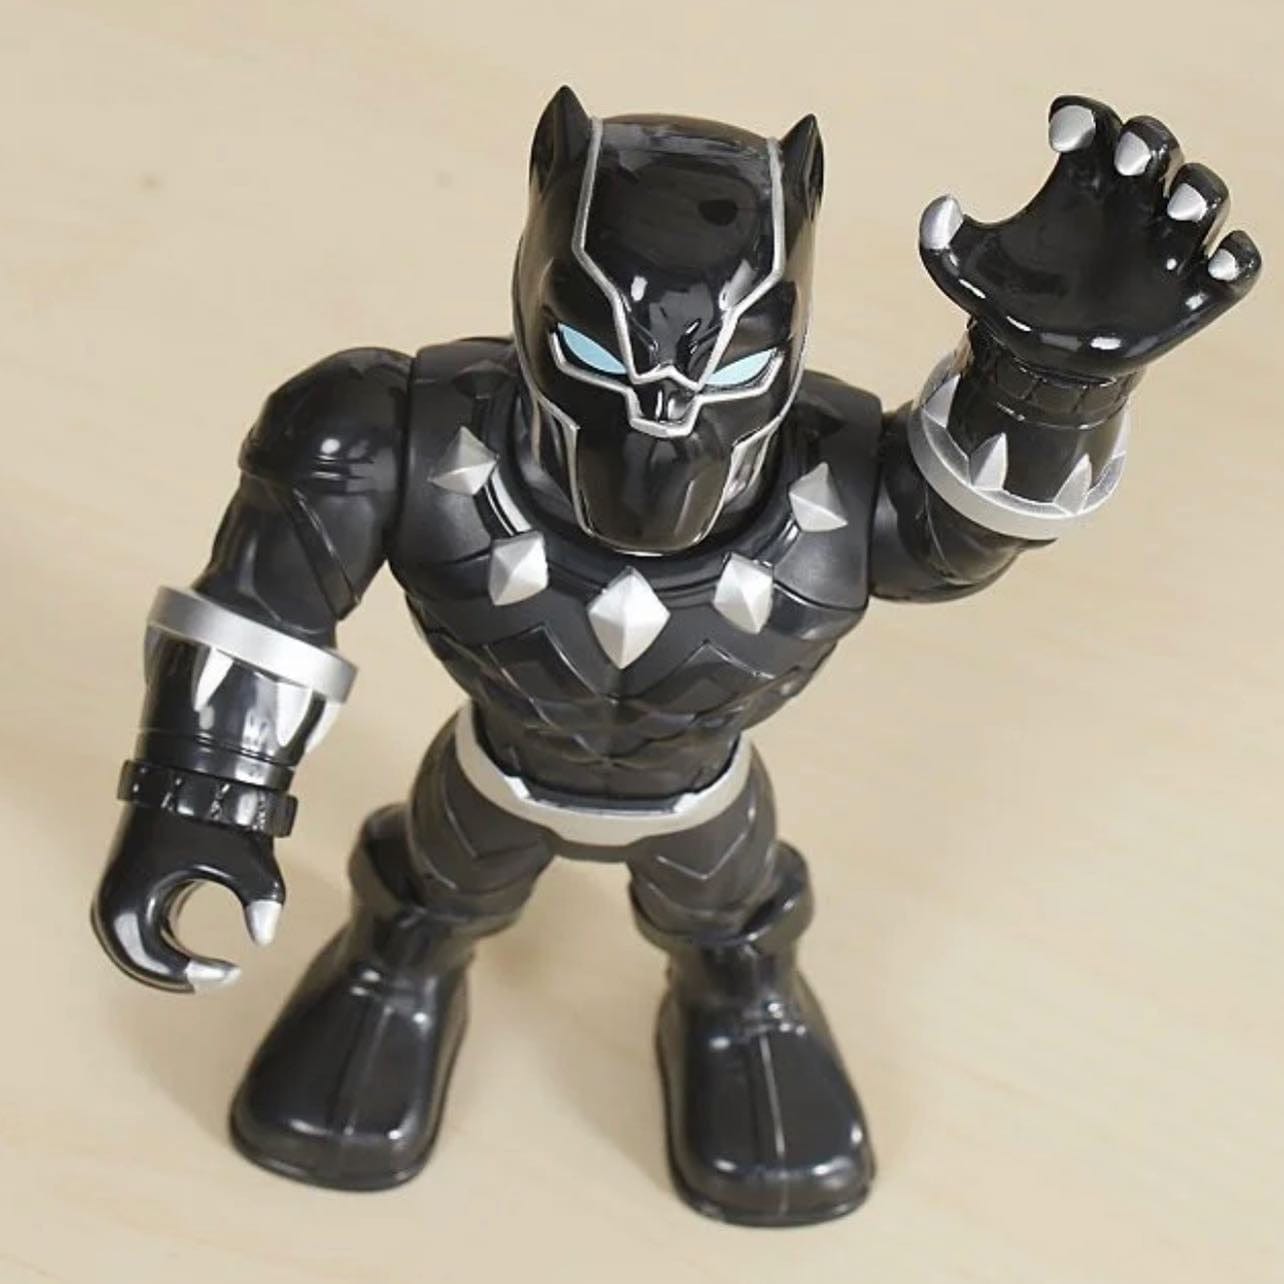 Playskool Heroes Marvel Super Hero Adventures Mega Mighties Black Panther